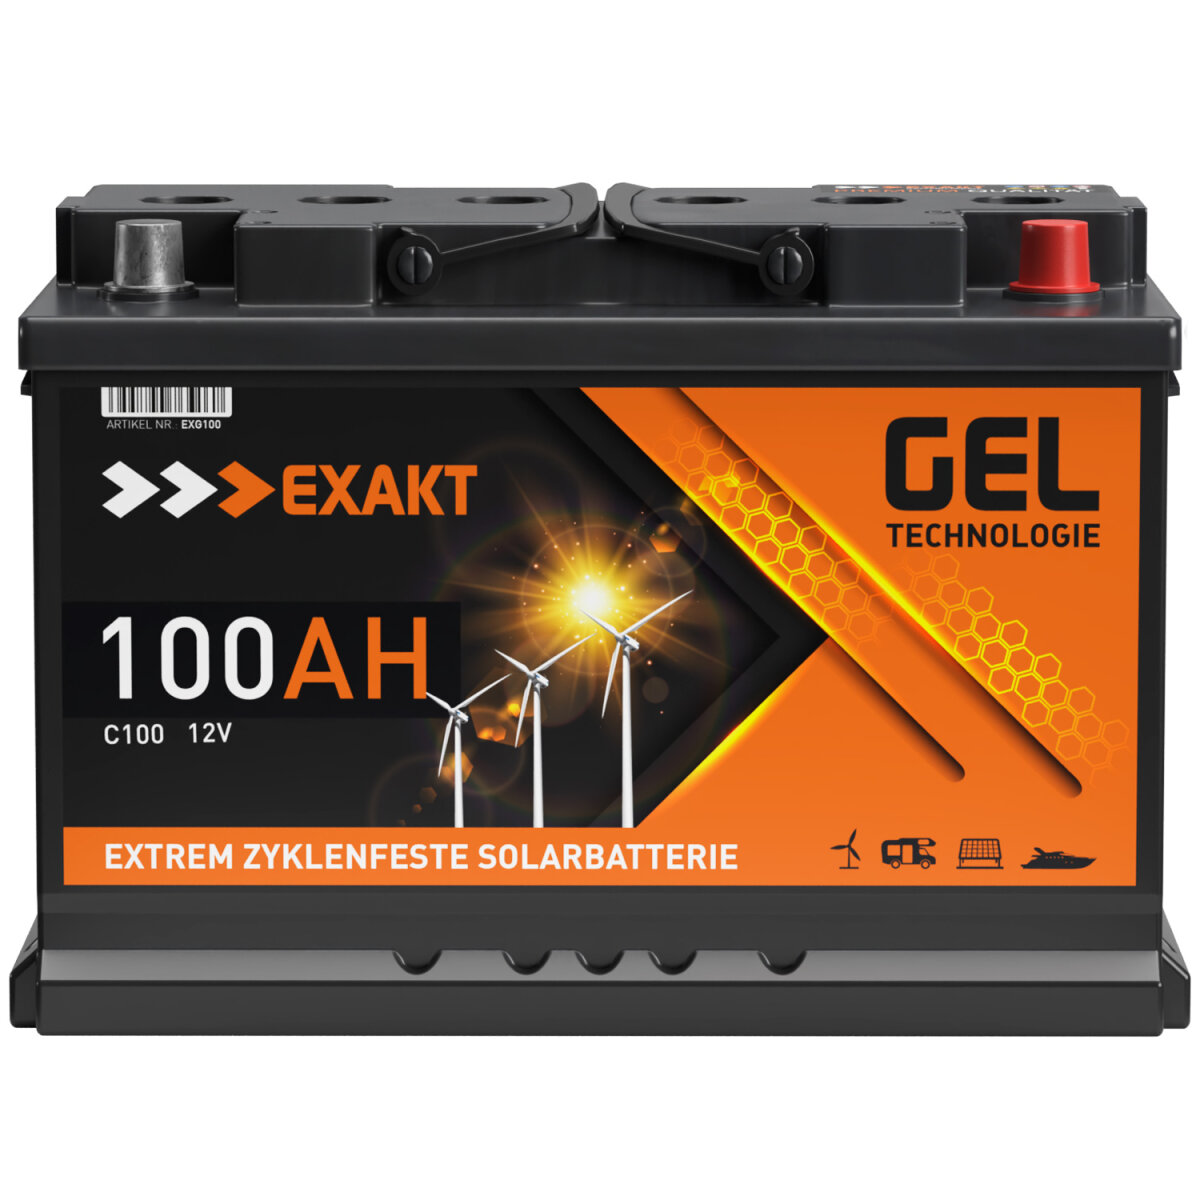 EXAKT GEL € Solarbatterie 138,57 100Ah 12V